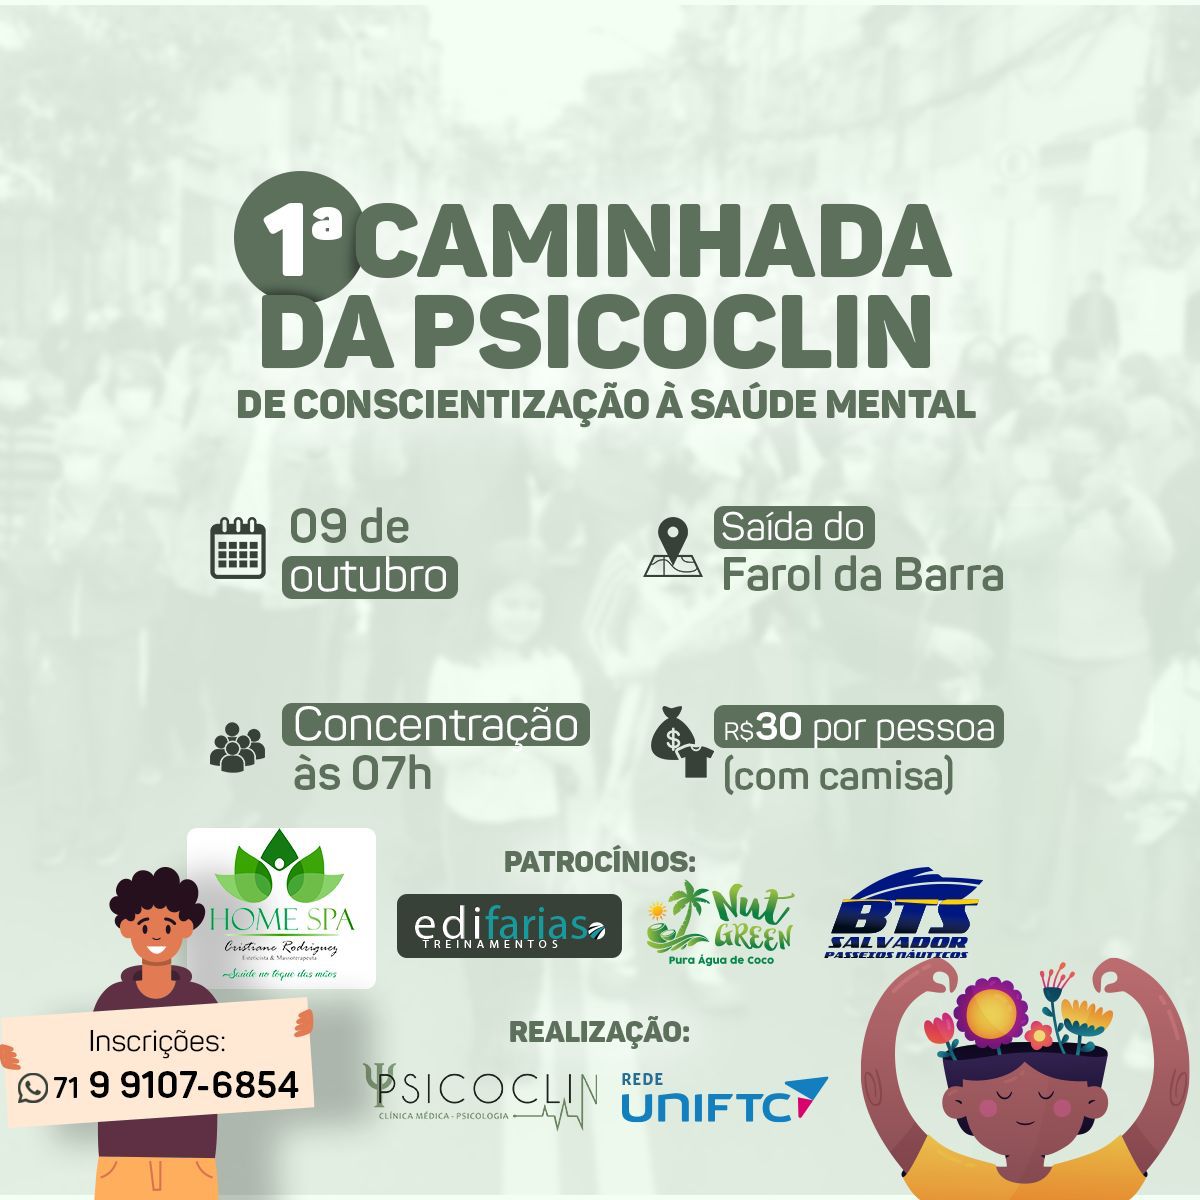 UniFTC e Psicoclin realizam caminhada de conscientização da saúde mental em Salvador